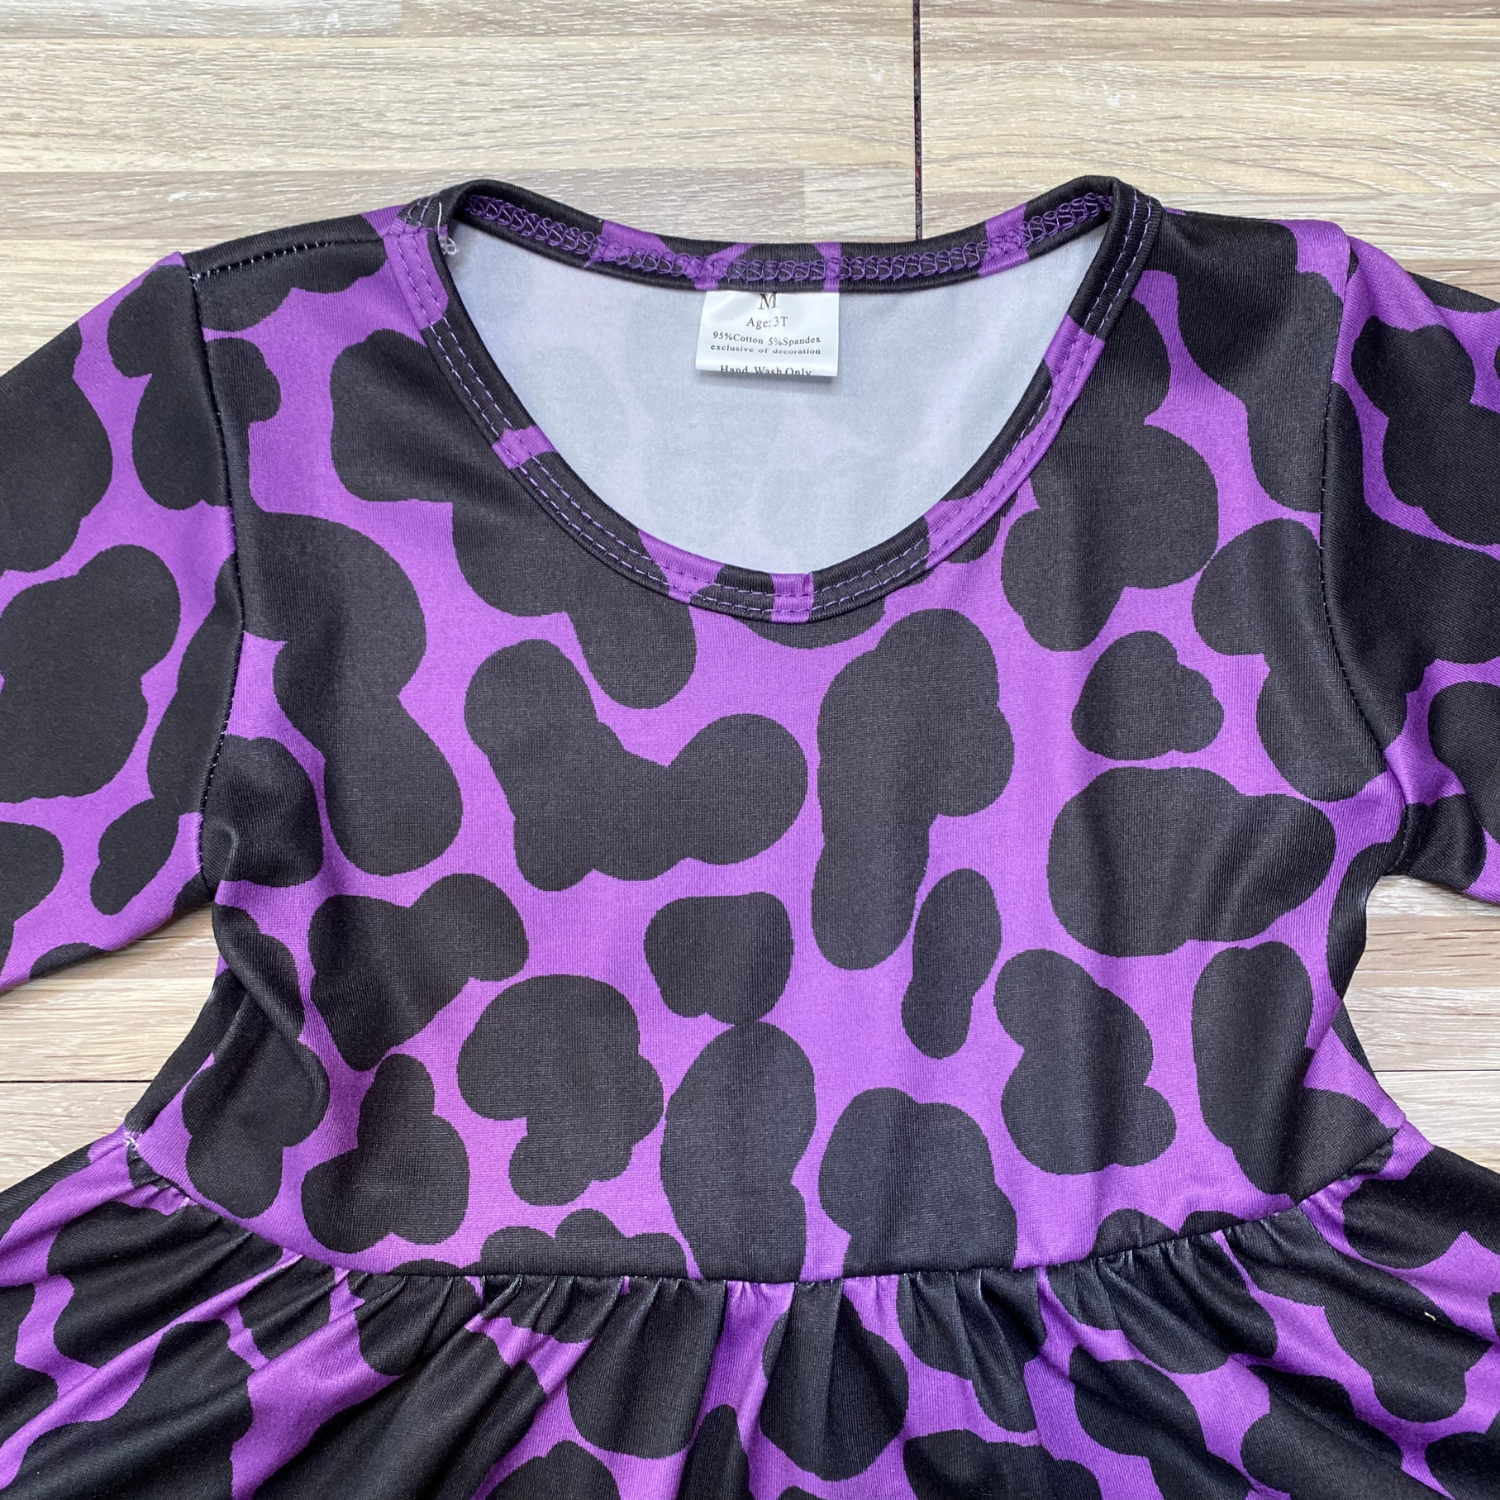 Purple Cowhide Twirly Dress (CC4901)-Dresses-ComfyCute by Sparkledots-sparkledots